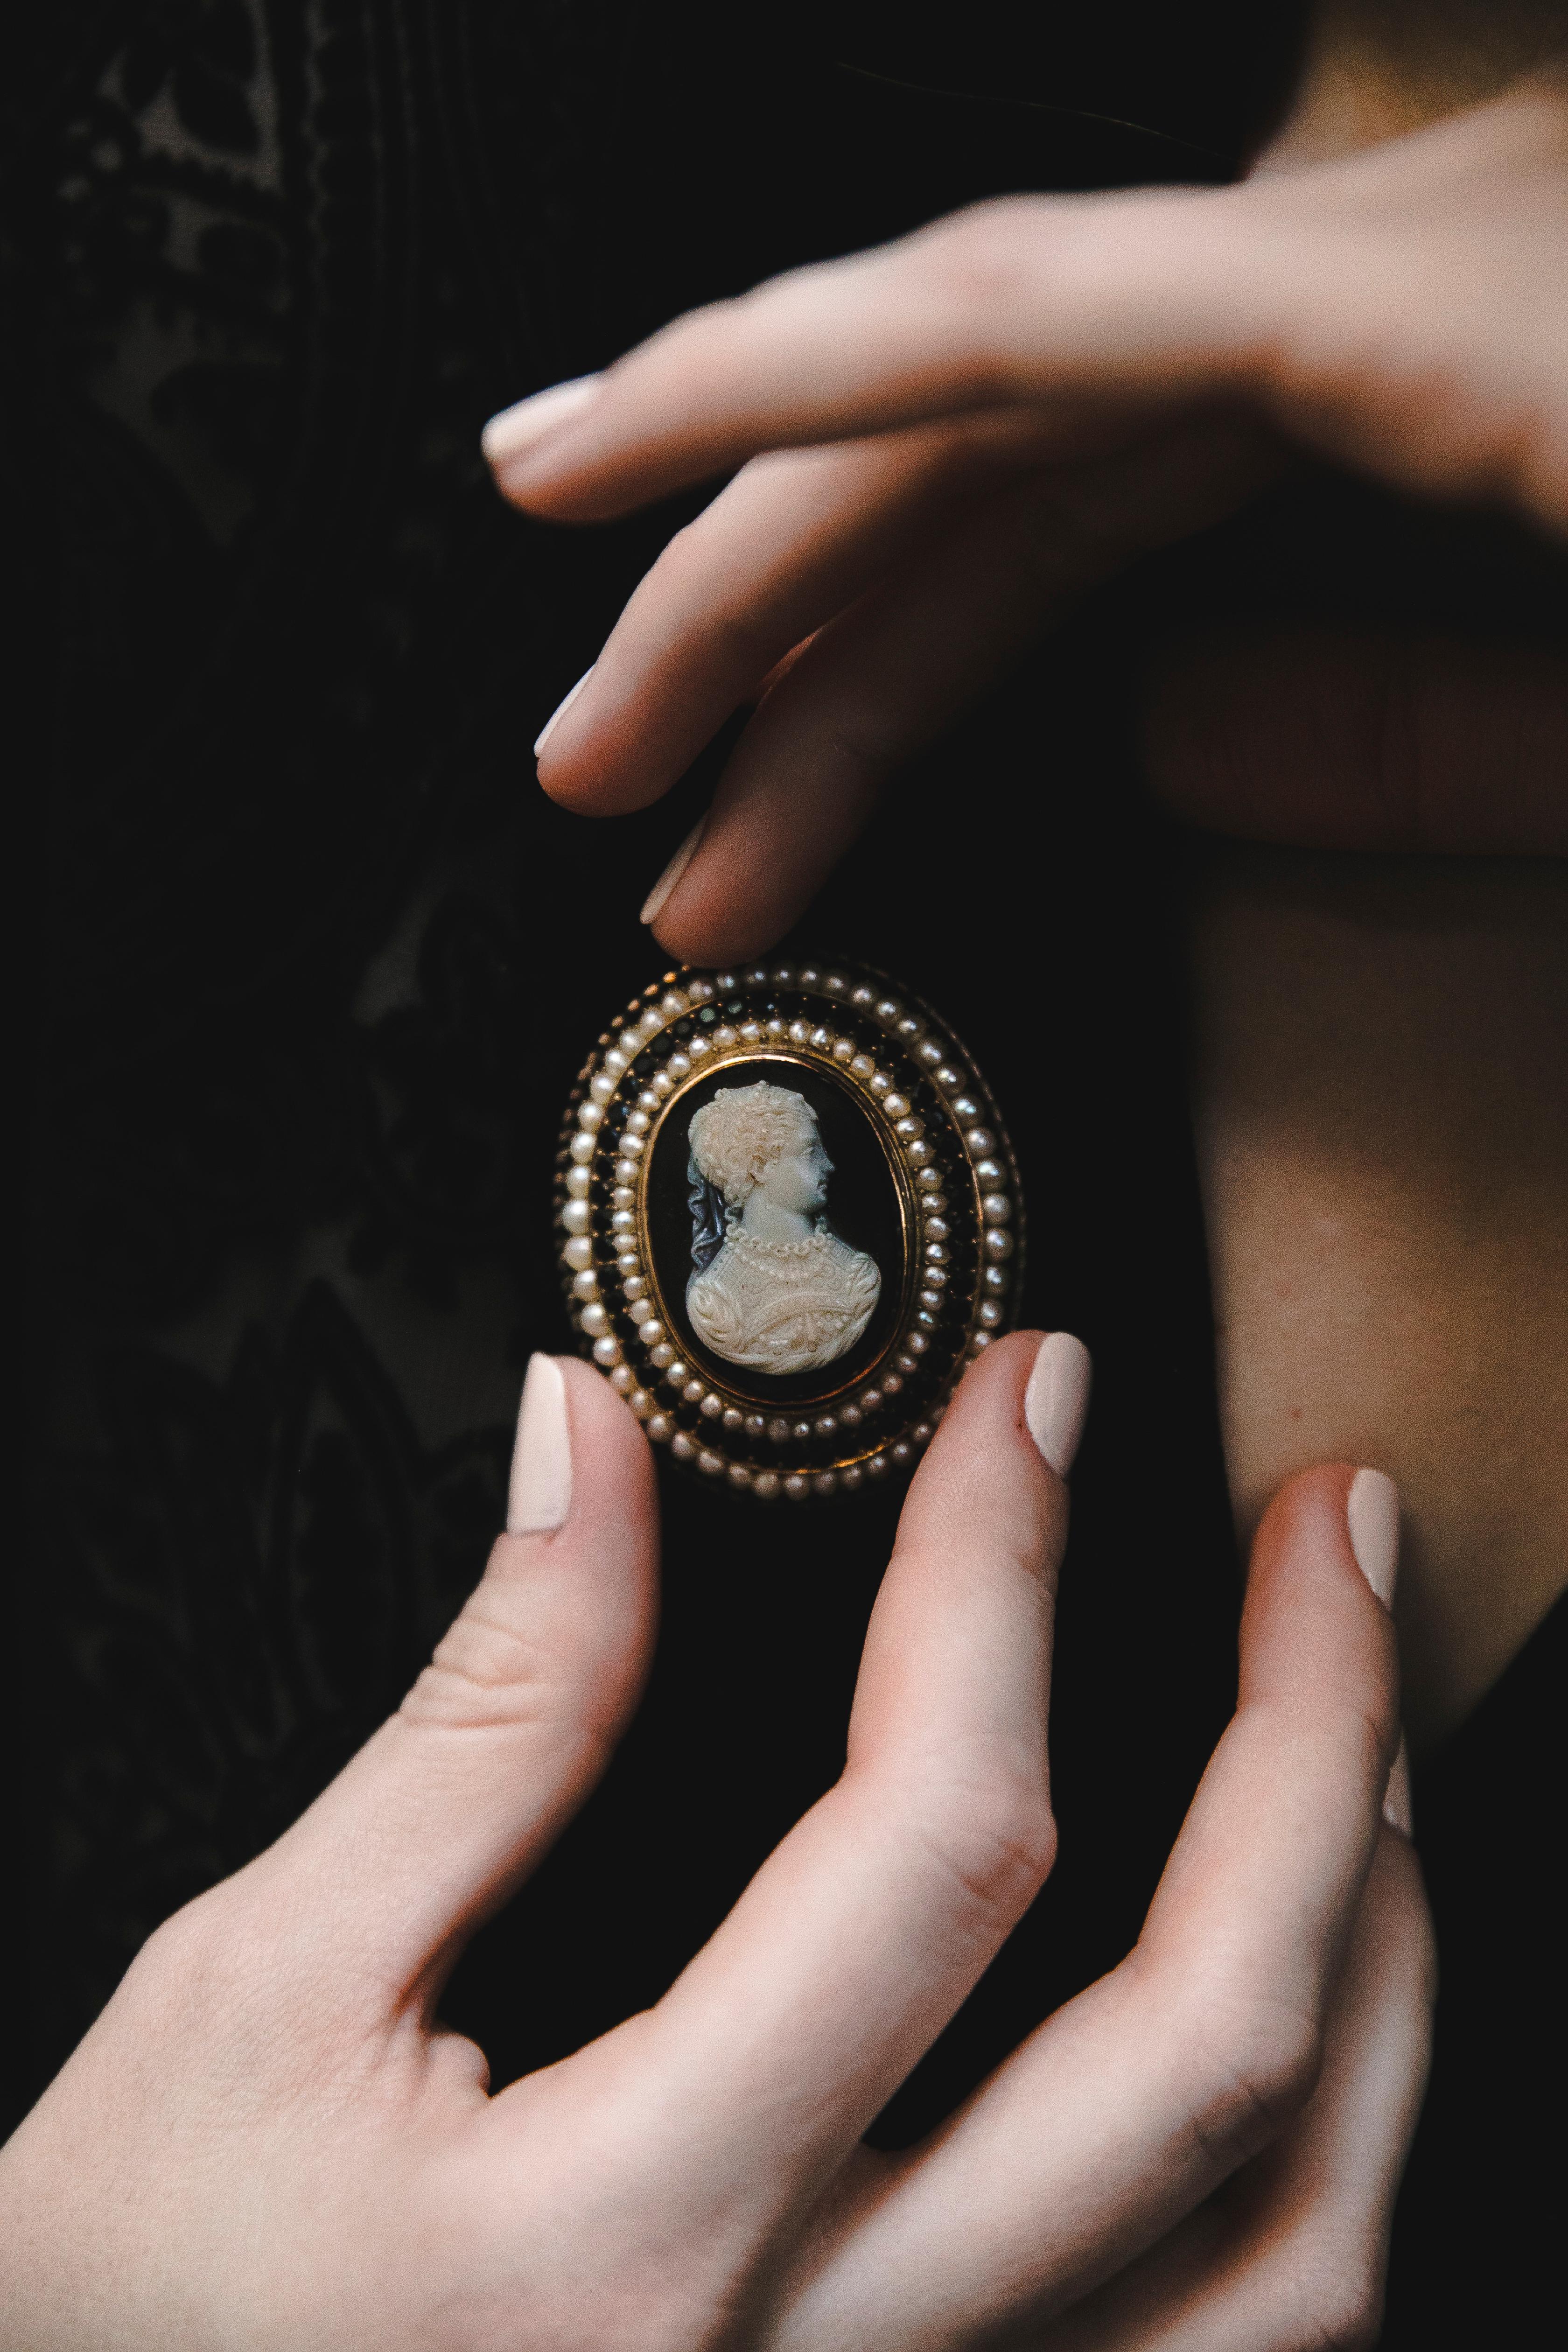 Antike viktorianische Achat- und Perlensamen, Granat-Gelbgold-Kamee-Brosche 1860
Äußerst zarte und feine Arbeit, die eine Dame der High Society mit Perlen und Seidenkleid darstellt. 
Die Brosche ist in aufsteigenden Stufen angeordnet, die ovale